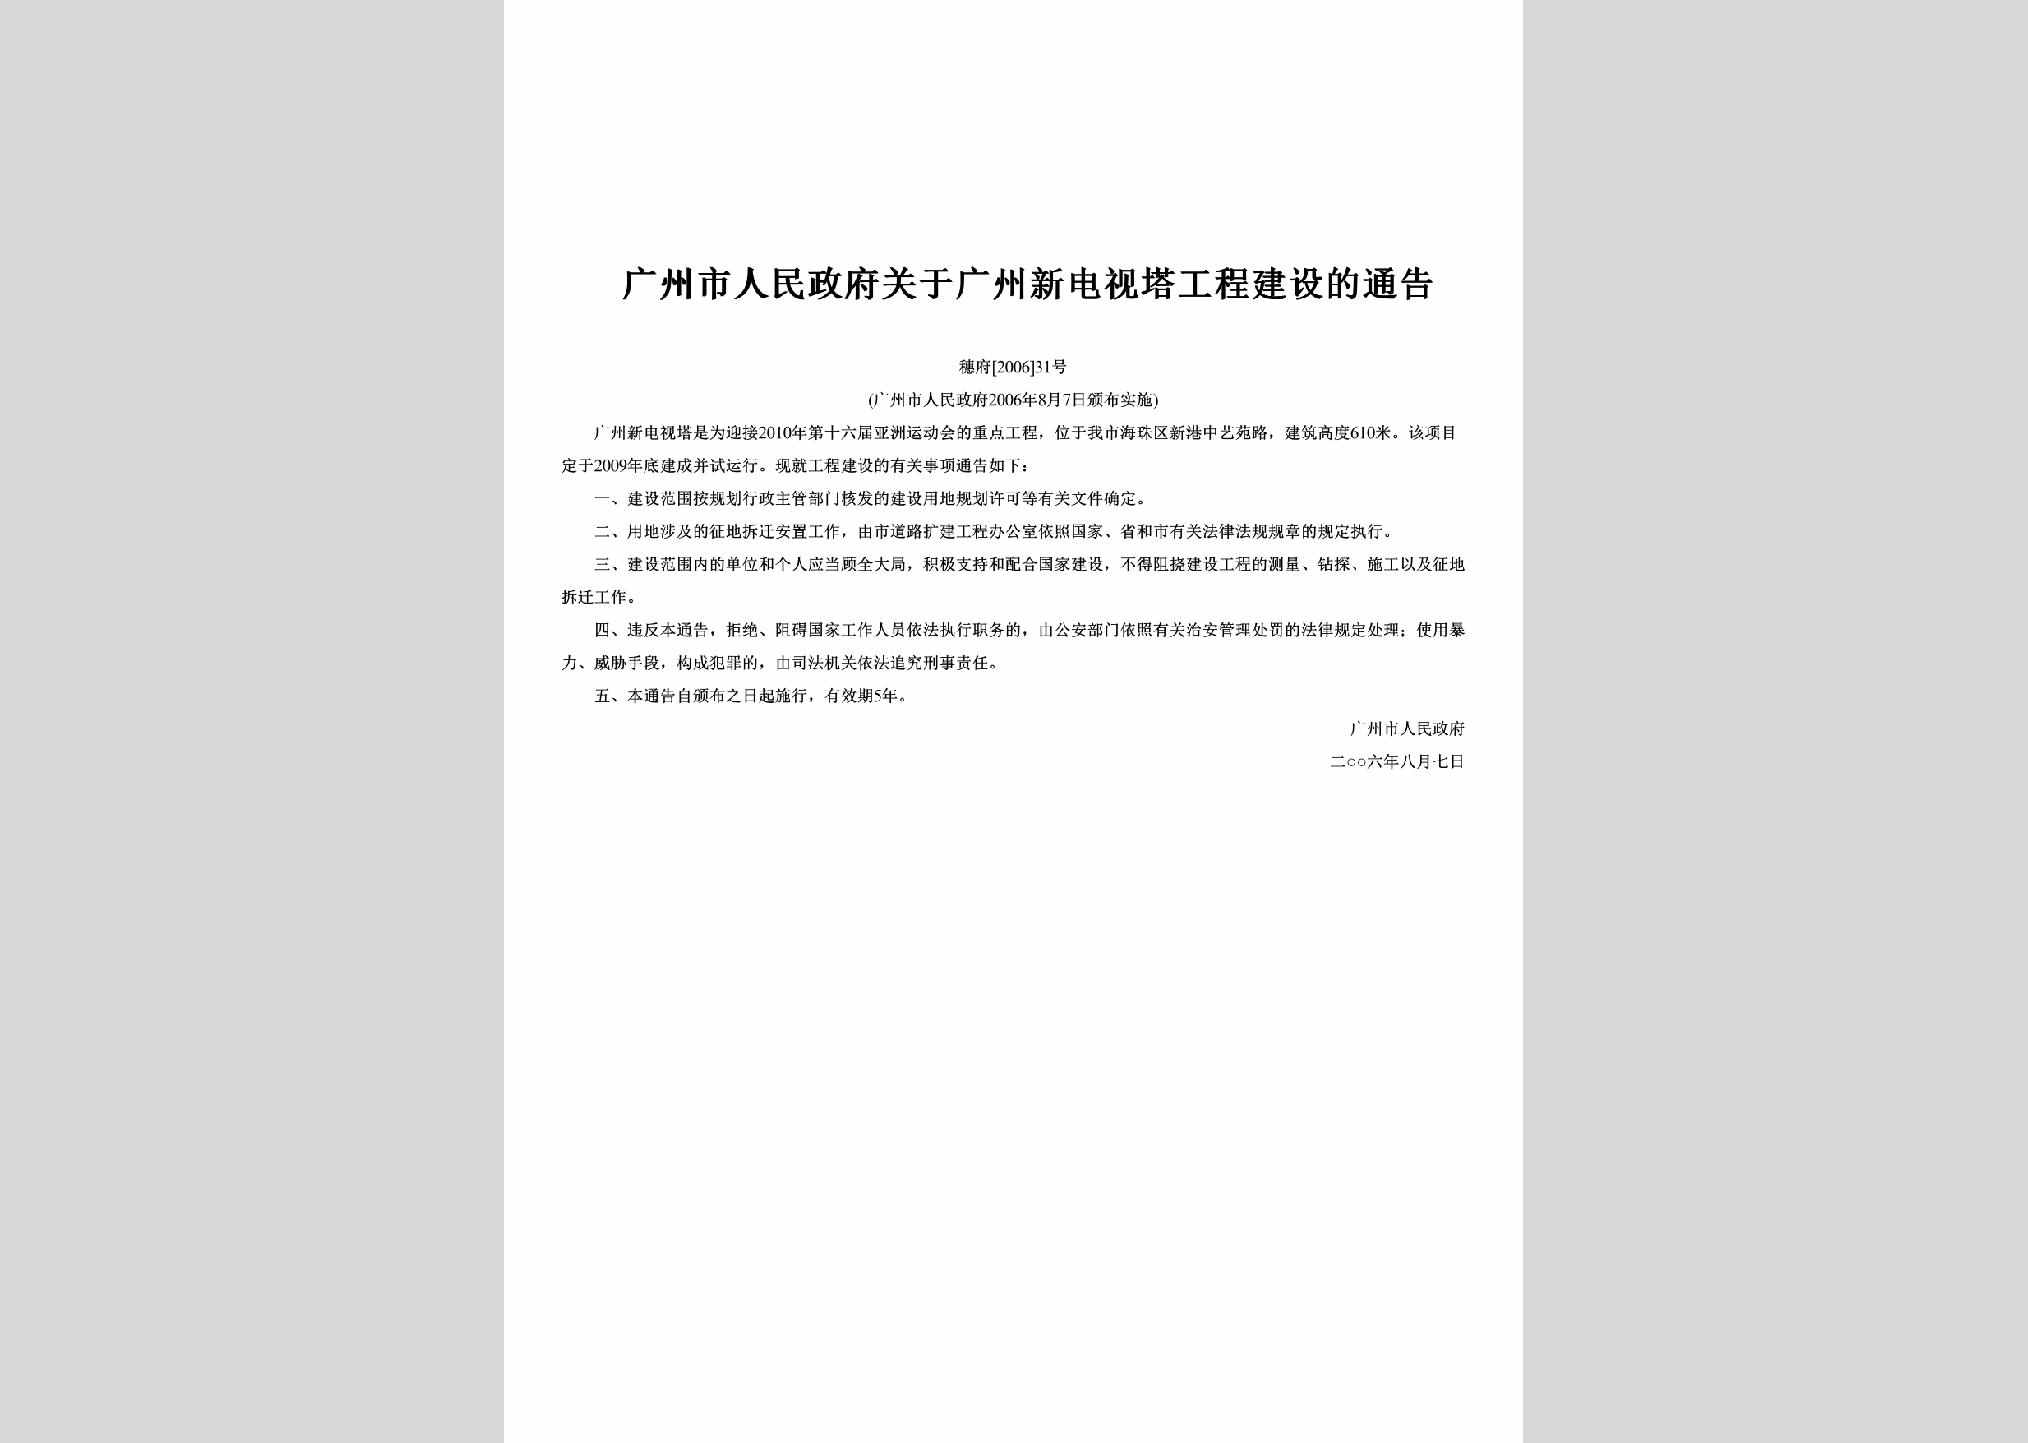 穗府[2006]31号：关于广州新电视塔工程建设的通告